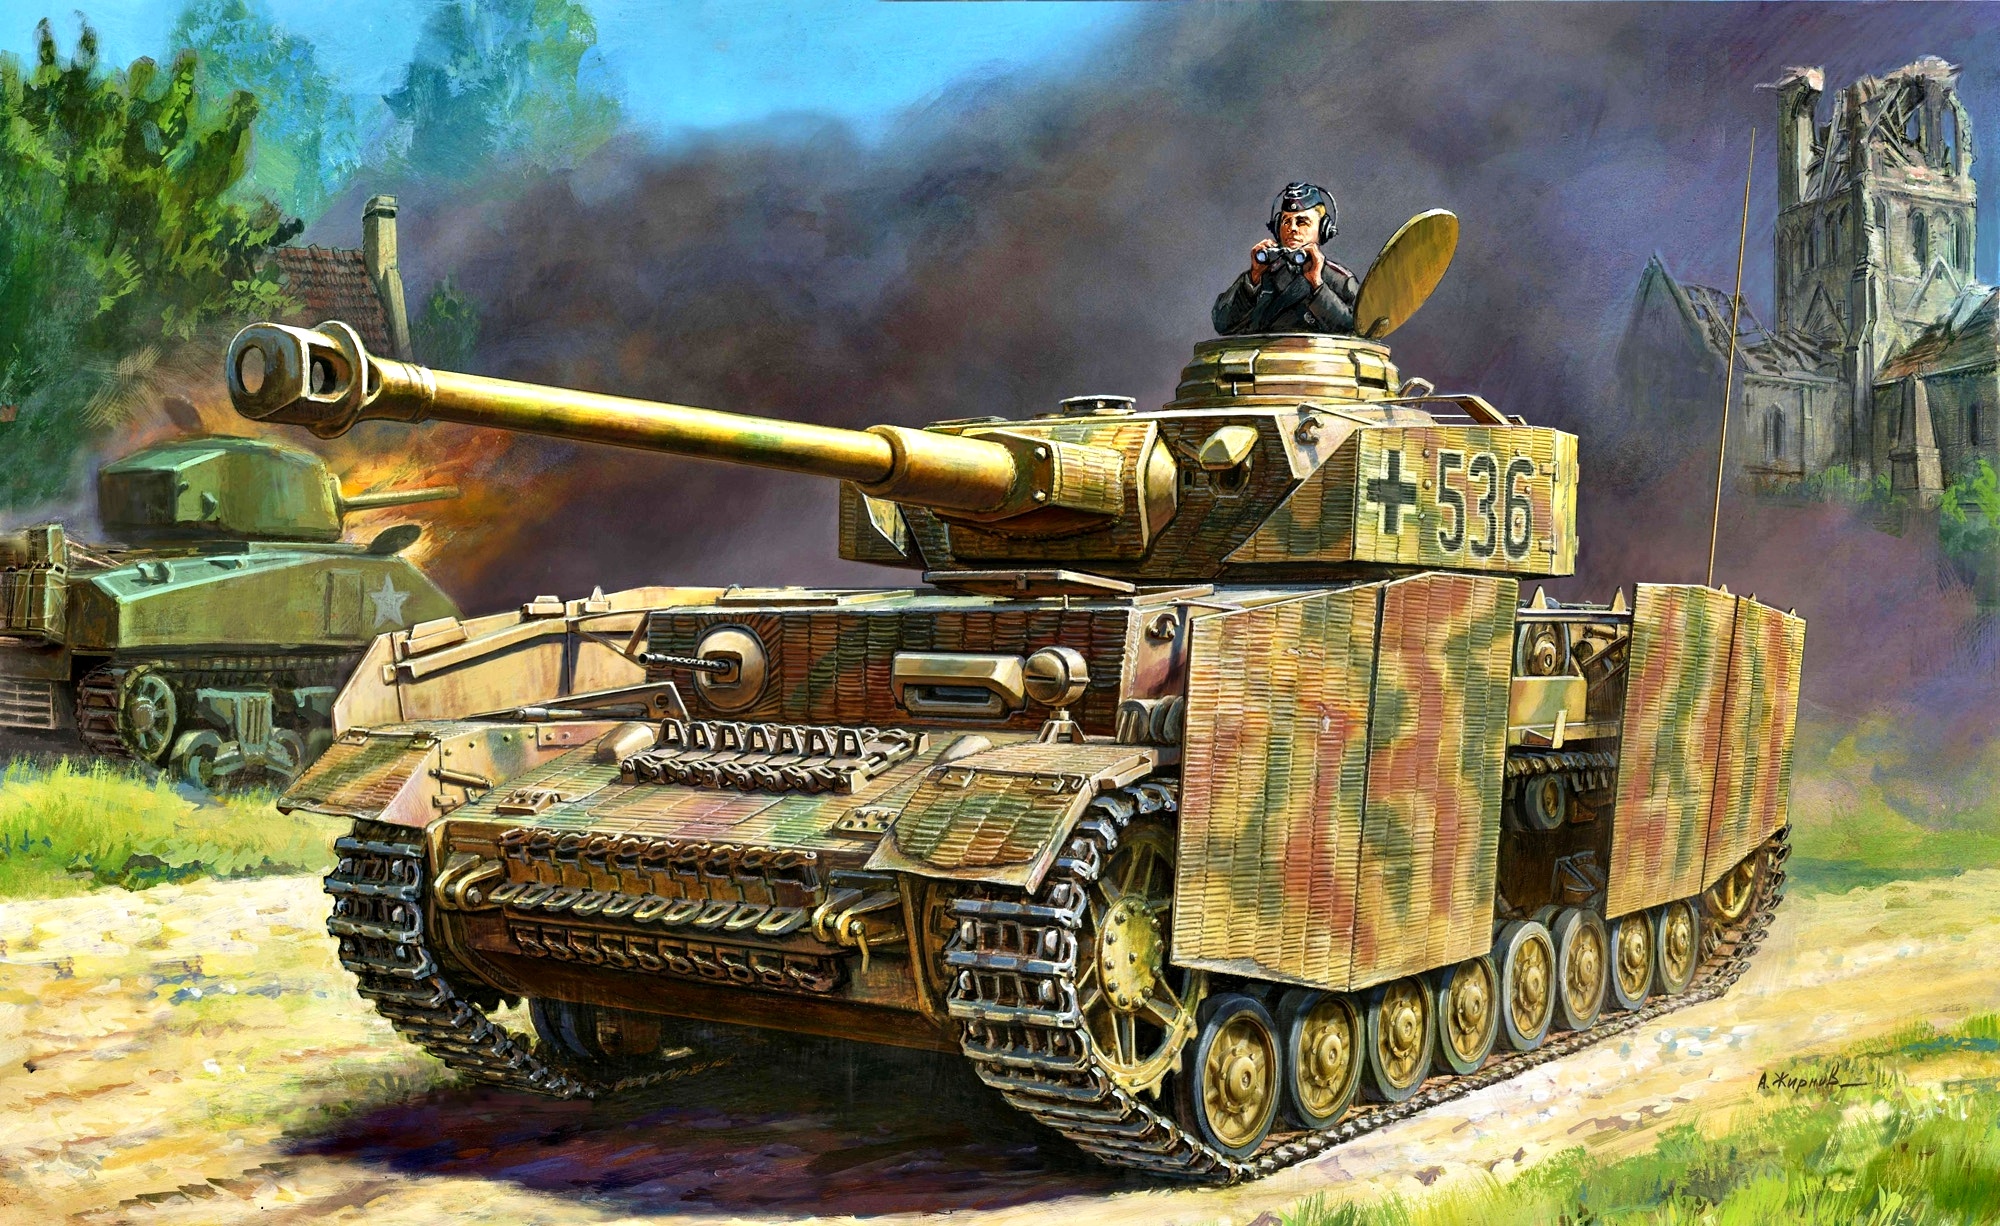 Немецкие танки 1 35. Танк Panzer 4 Ausf.h. Сборная модель zvezda немецкий средний танк t-IV (H) (3620) 1:35. PZ 4 Ausf h звезда. Немецкий танк PZ 4.